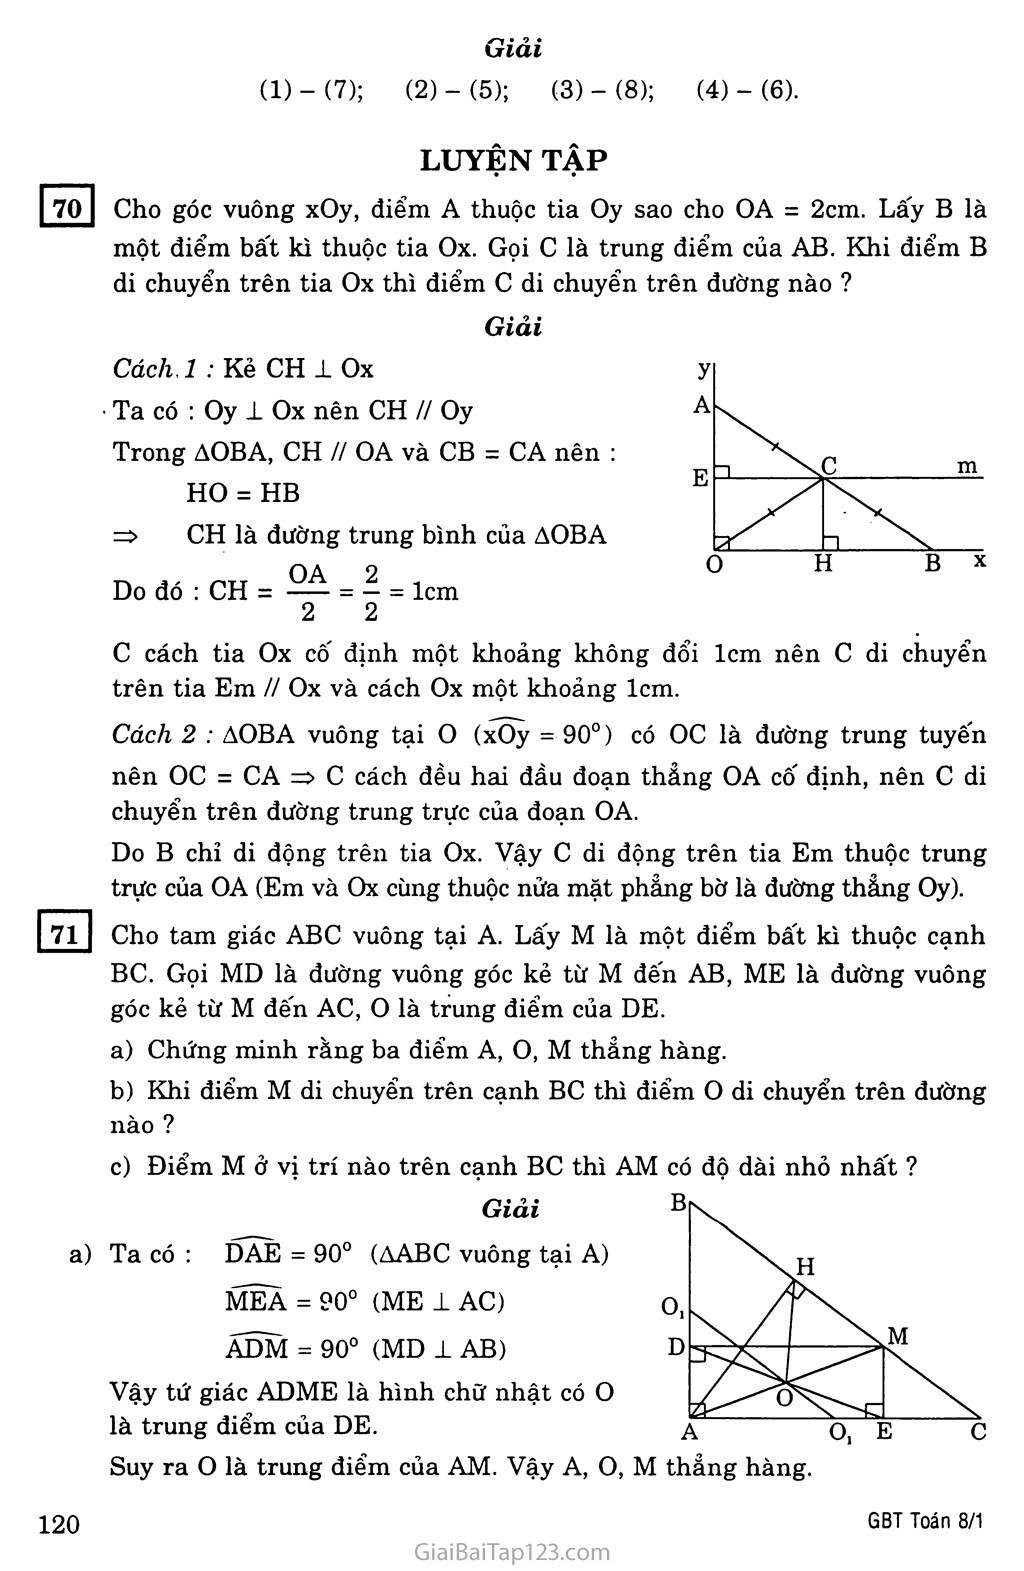 §10. Đường thẳng song song với một đường thẳng cho trước trang 4